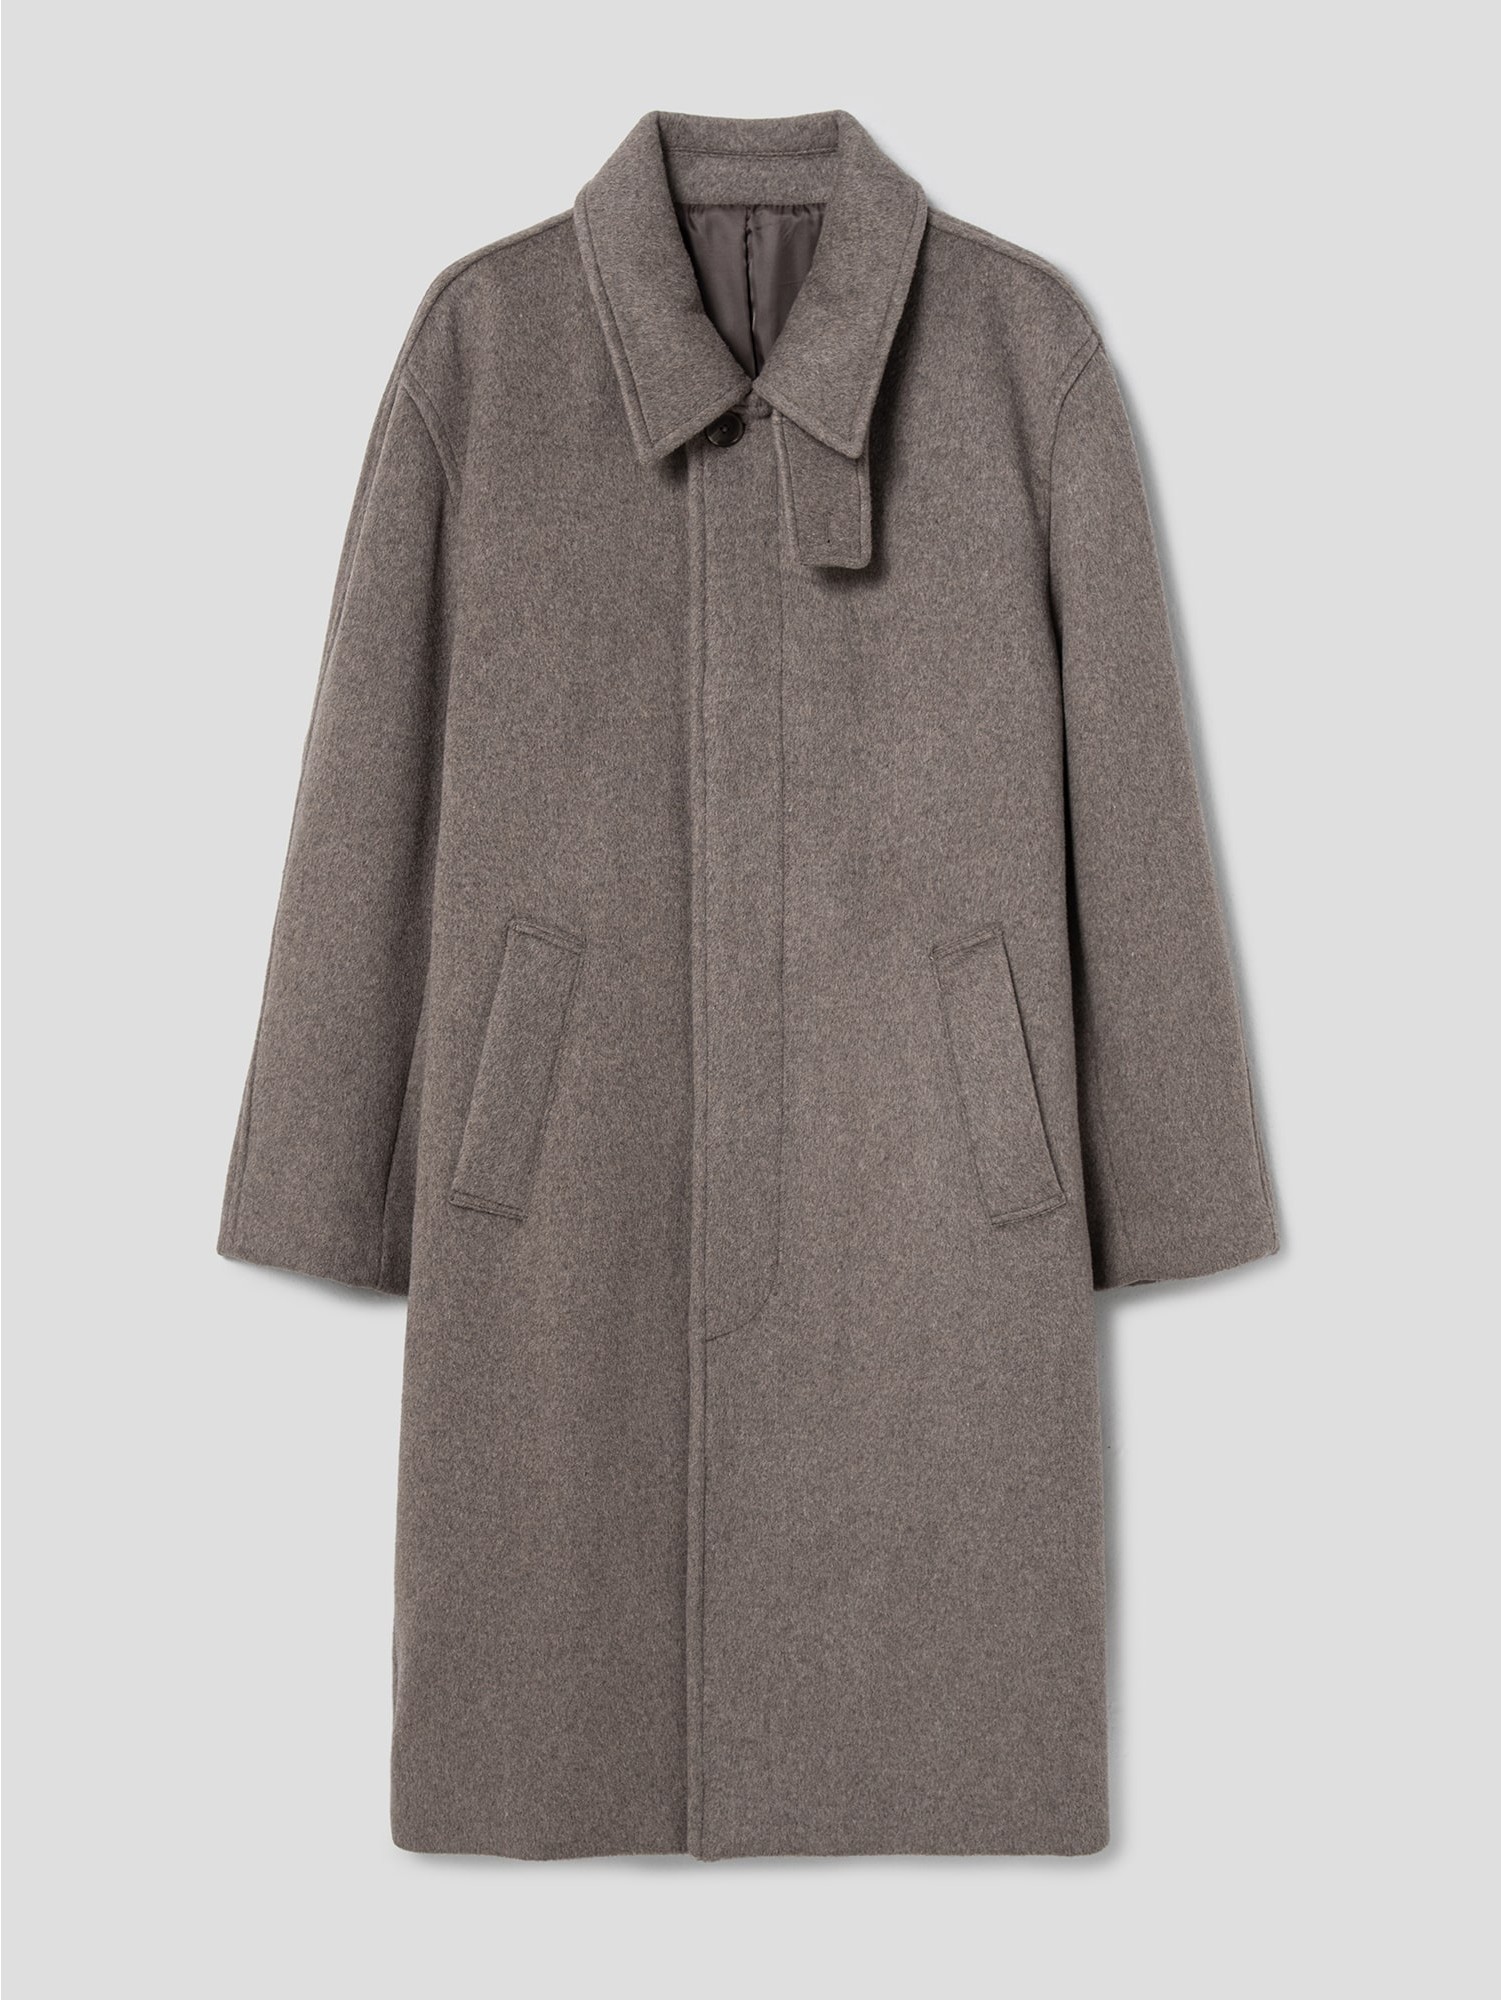 8seconds Wool Blended Balmacaan Coat Dark Brown | Coats for Men 